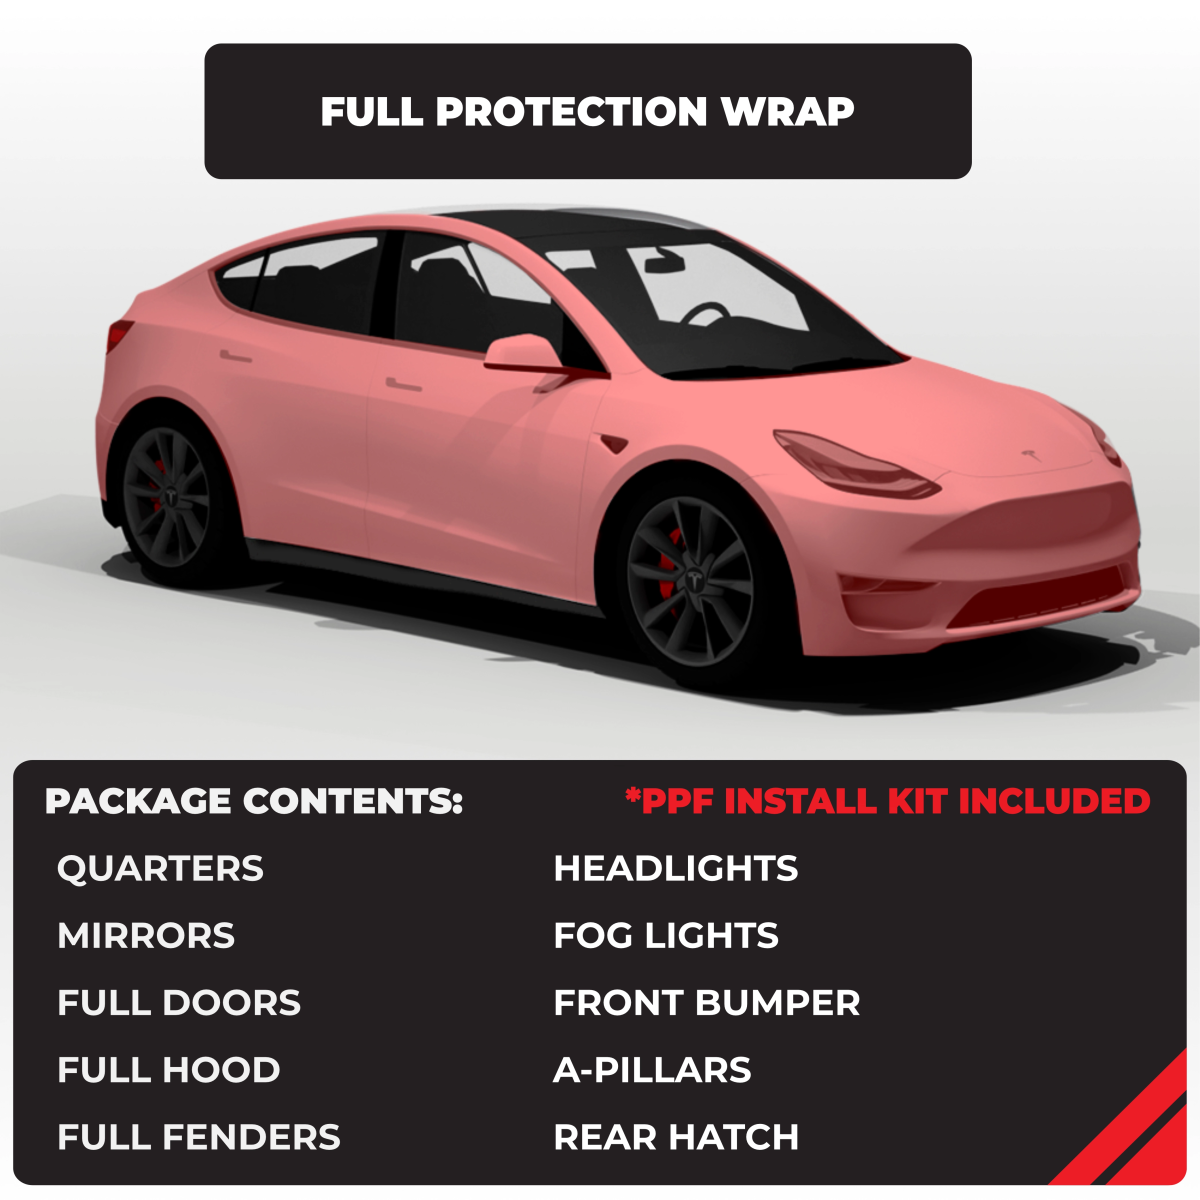 Tesla Model Y Matte Paint Protection Film (PPF) Wrap